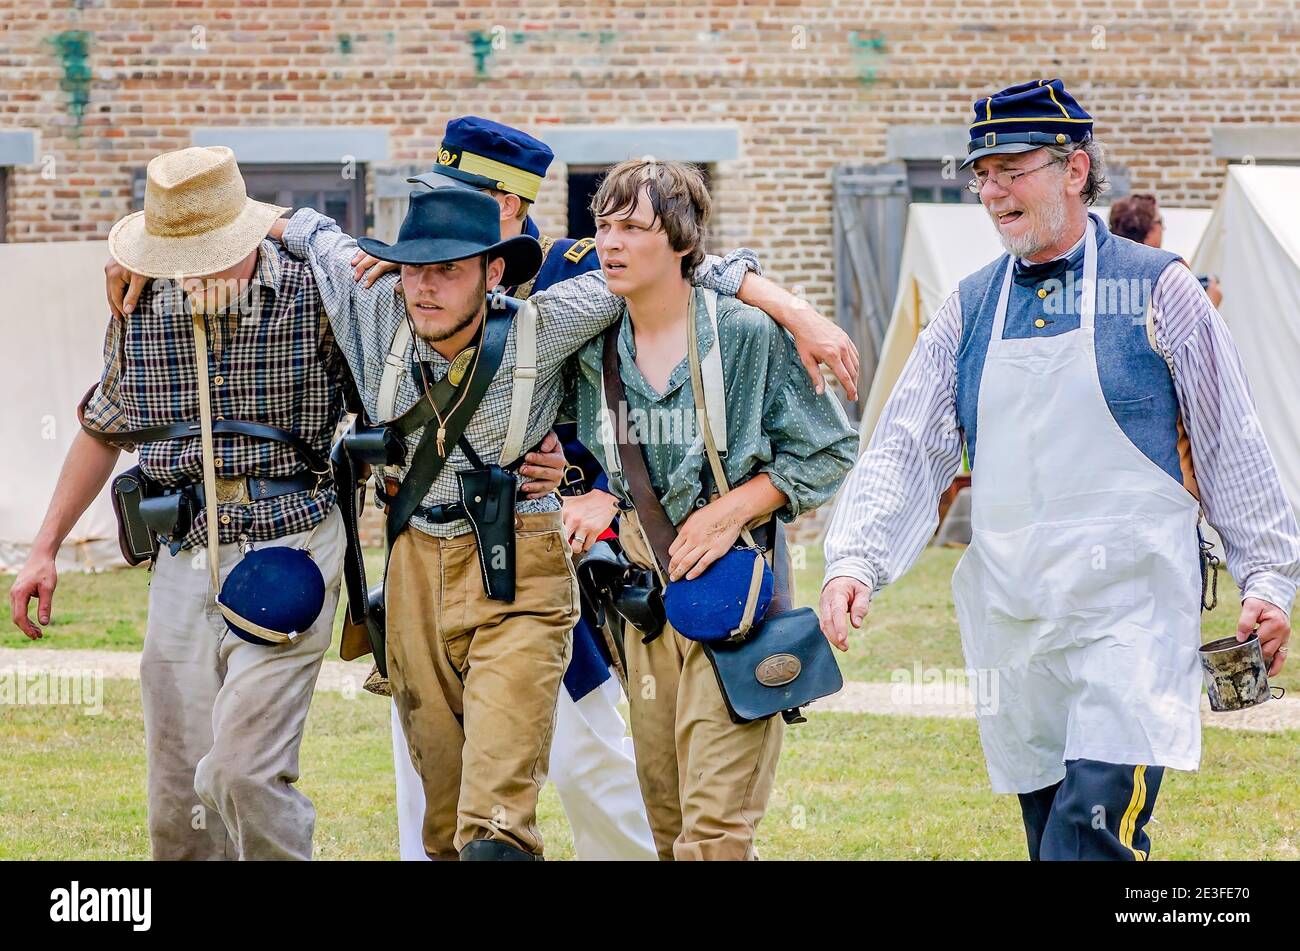 Los renactores de la Guerra Civil que representan al Ejército Confederado ayudan a un soldado herido en Fort Gaines durante una reconstrucción de la 150ª Batalla de Mobile Bay. Foto de stock